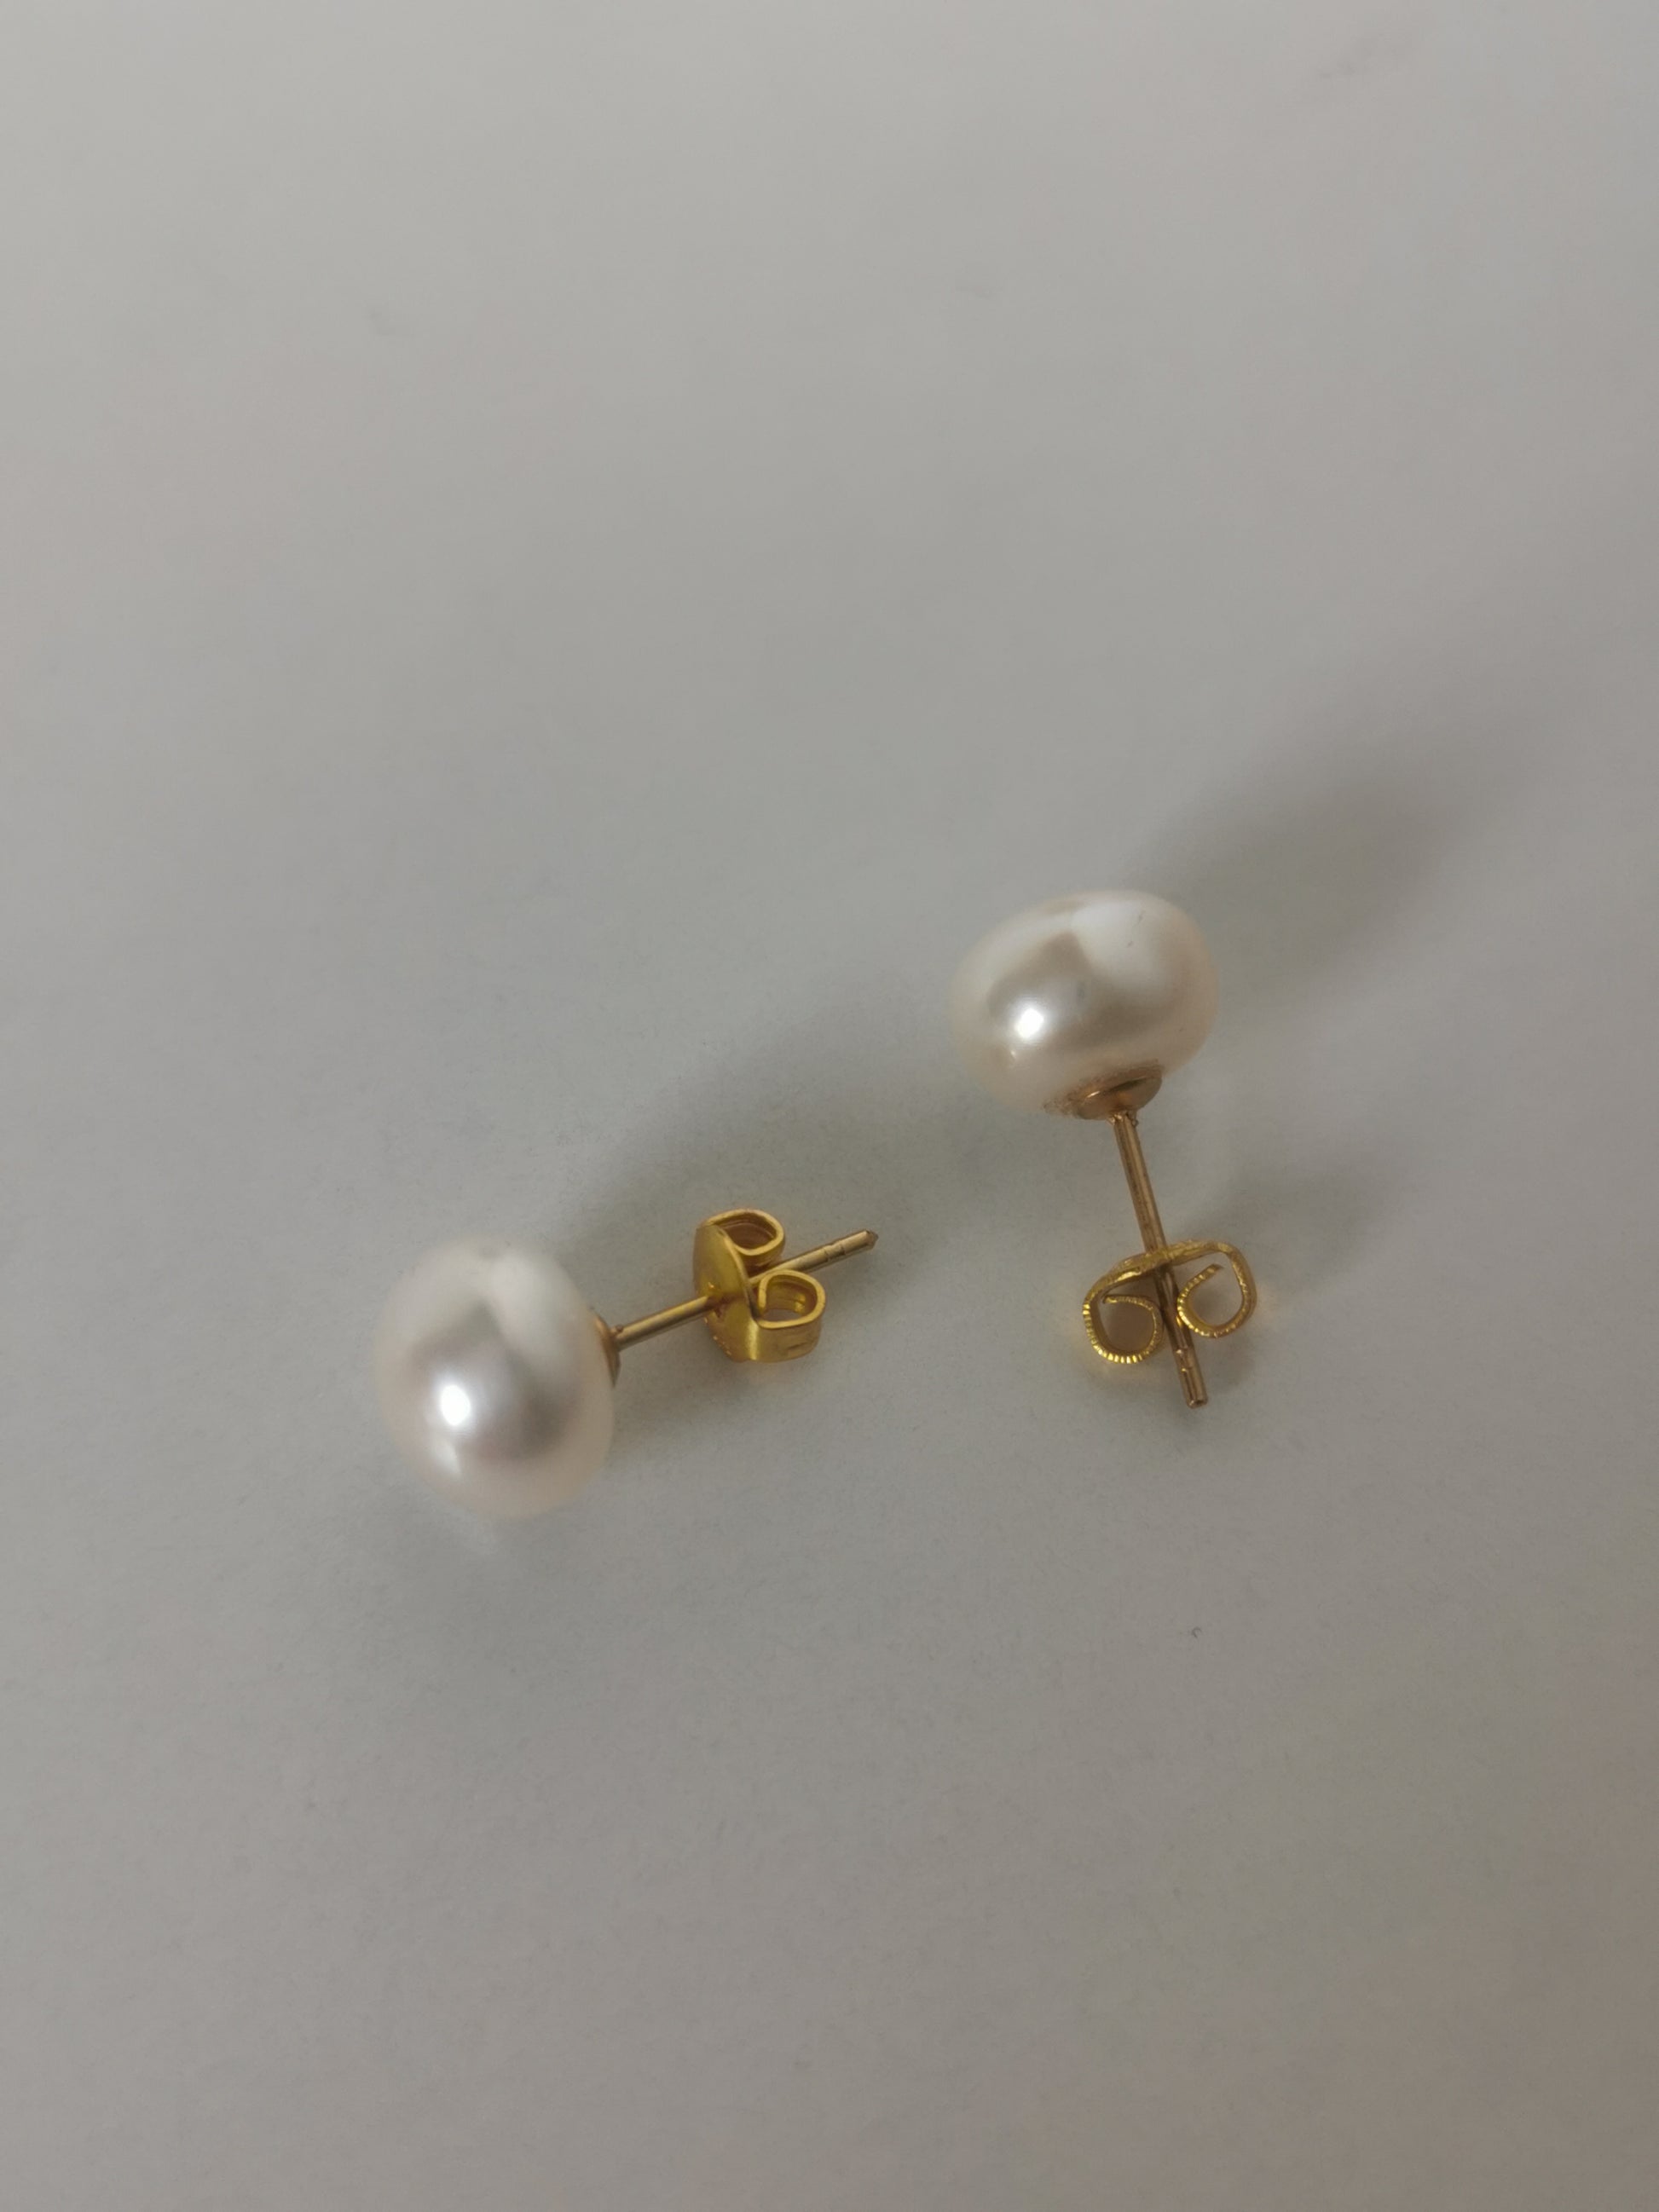 Boucles d'oreilles perles de culture blanches 9mm montées sur clous plaqués or. Présentées perpendiculairement, boucle de gauche à l'horizontale, perle à gauche, celle de droite verticalement perle en haut, posées sur un fond blanc. Vue de dessus.